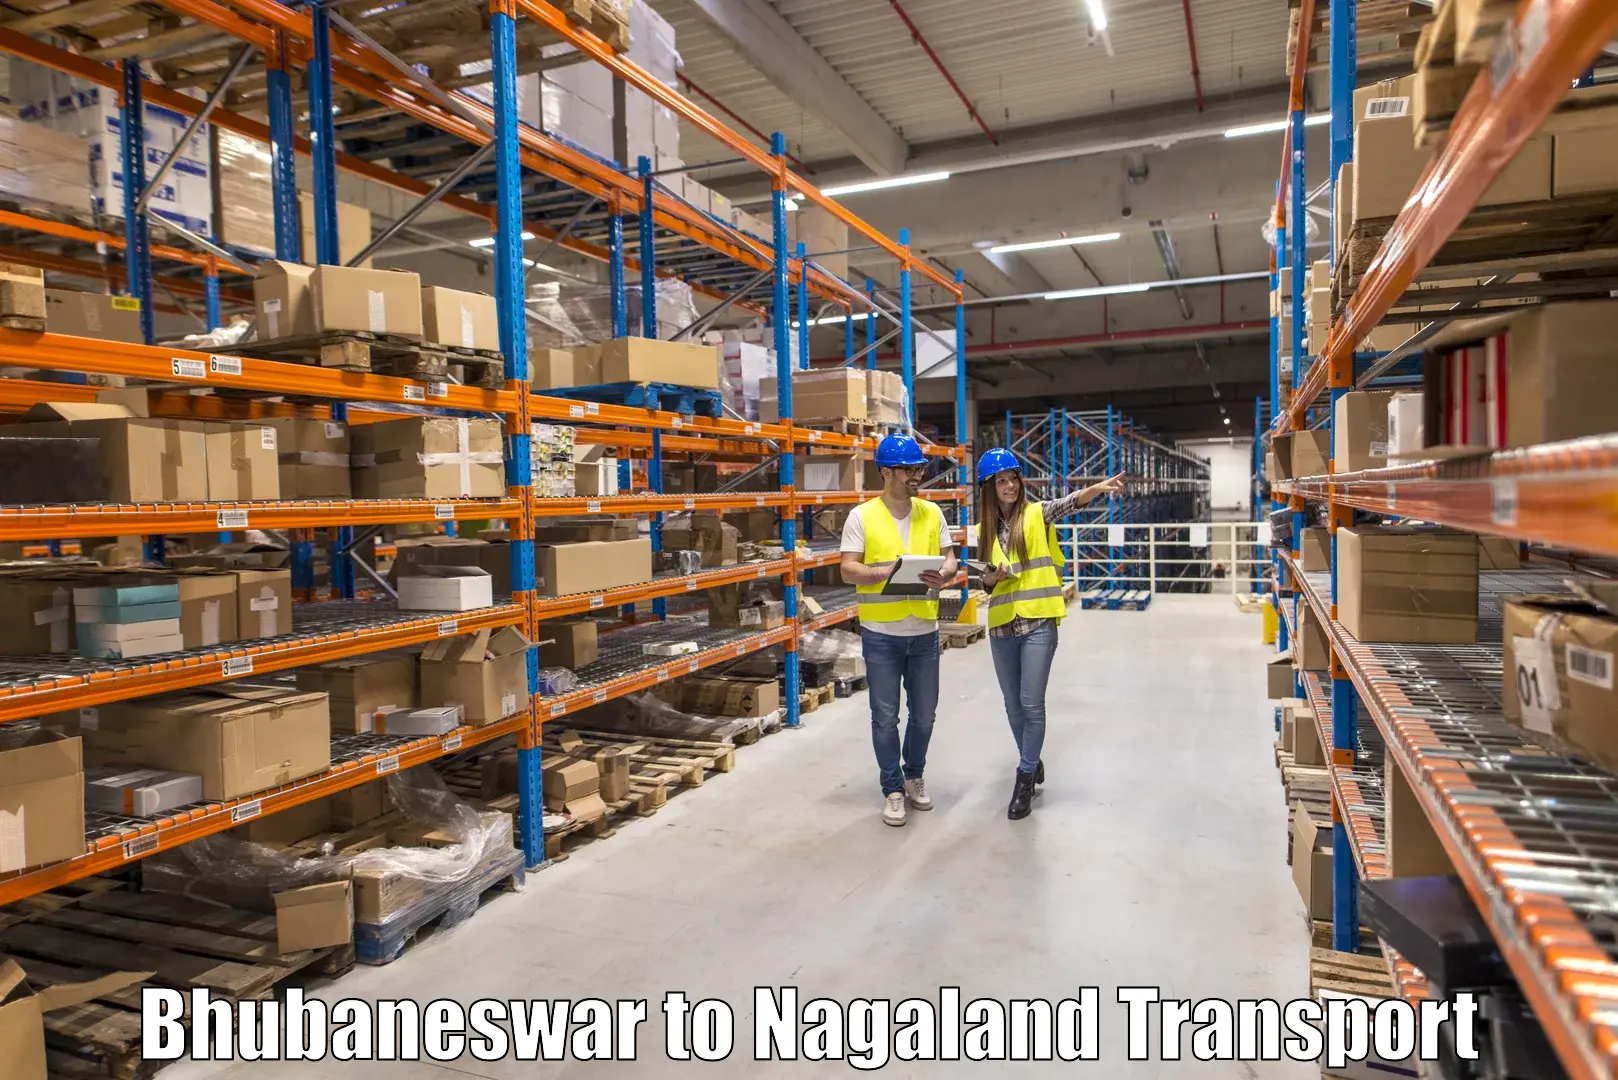 Furniture transport service Bhubaneswar to Wokha